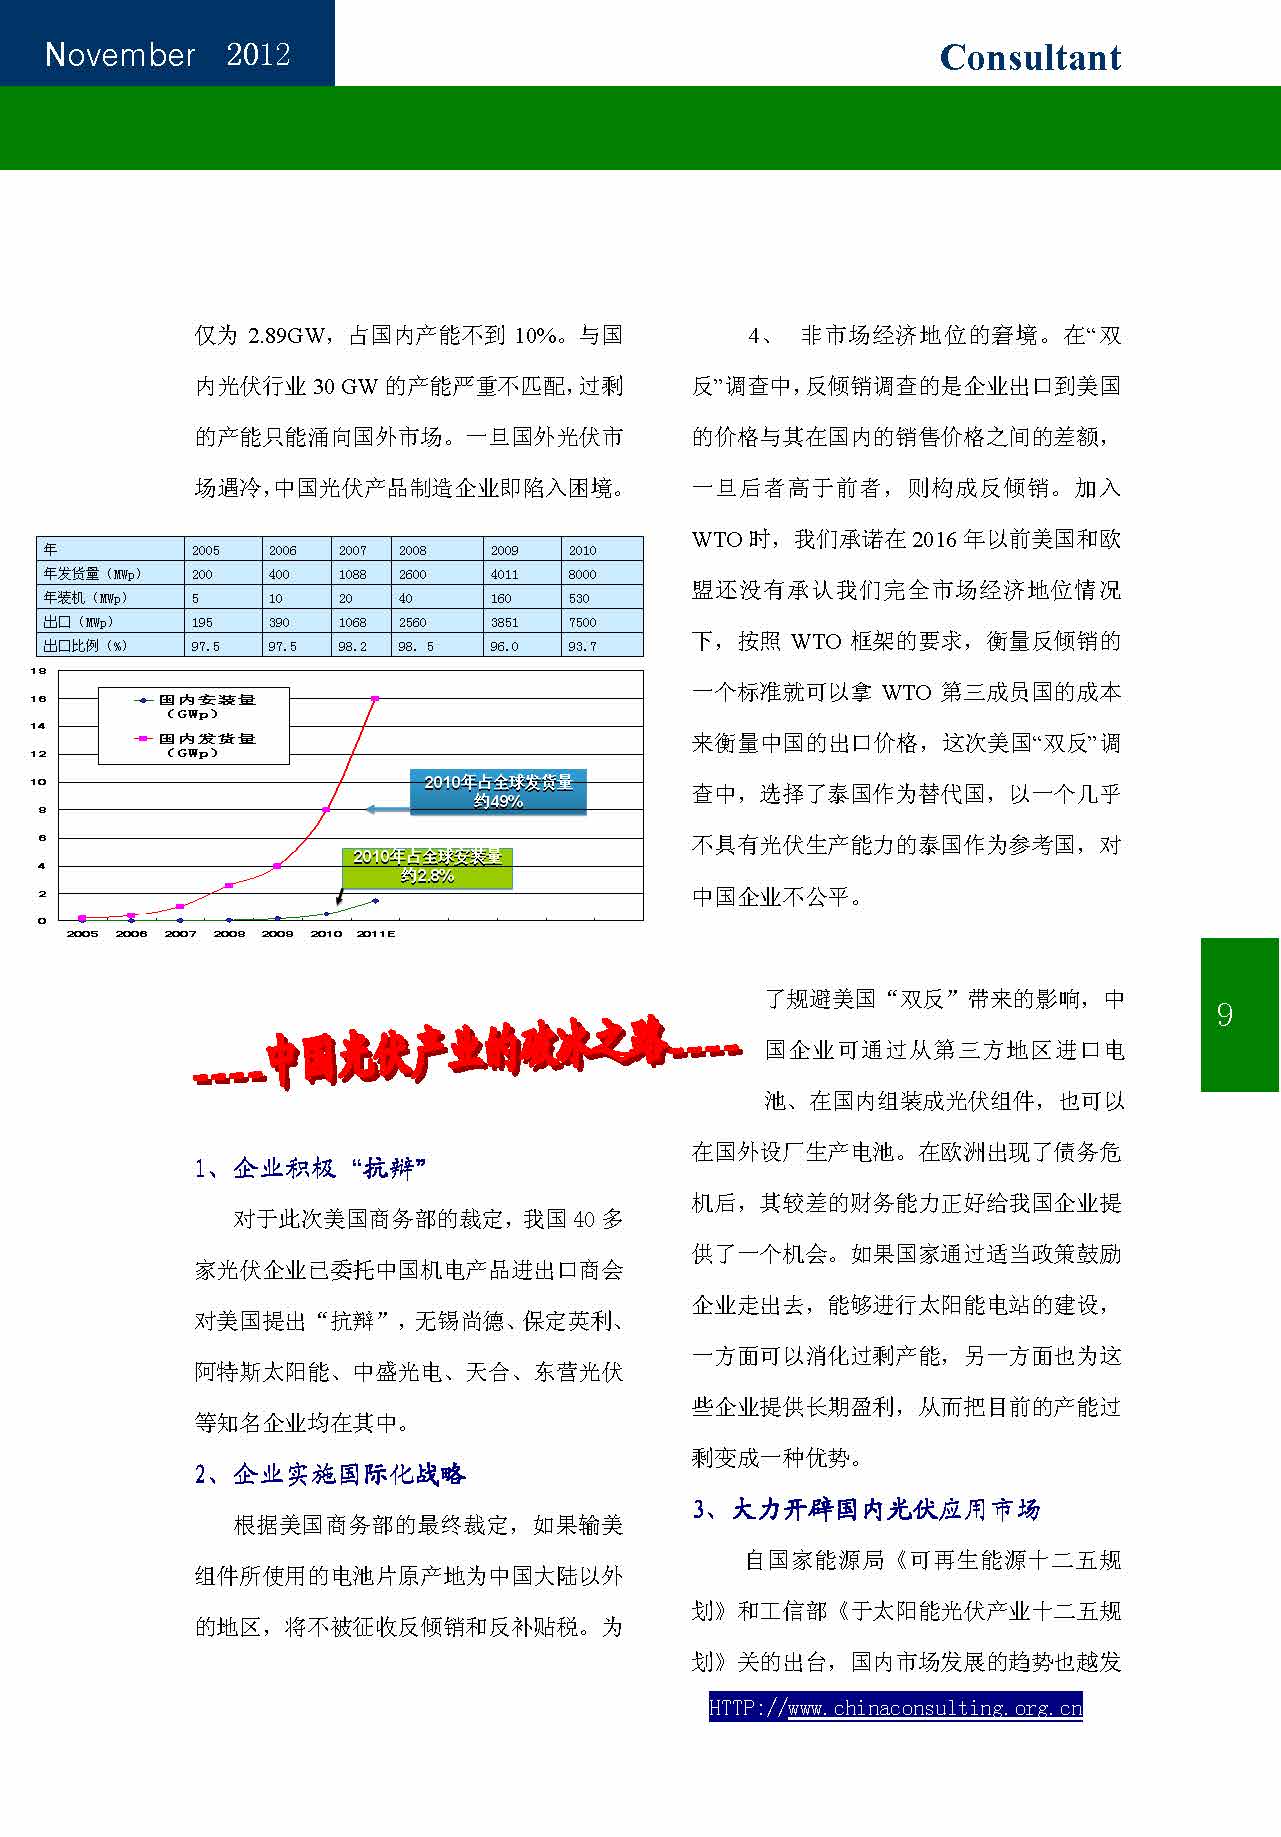 25中国科技咨询协会会刊（第二十五期）_页面_11.jpg